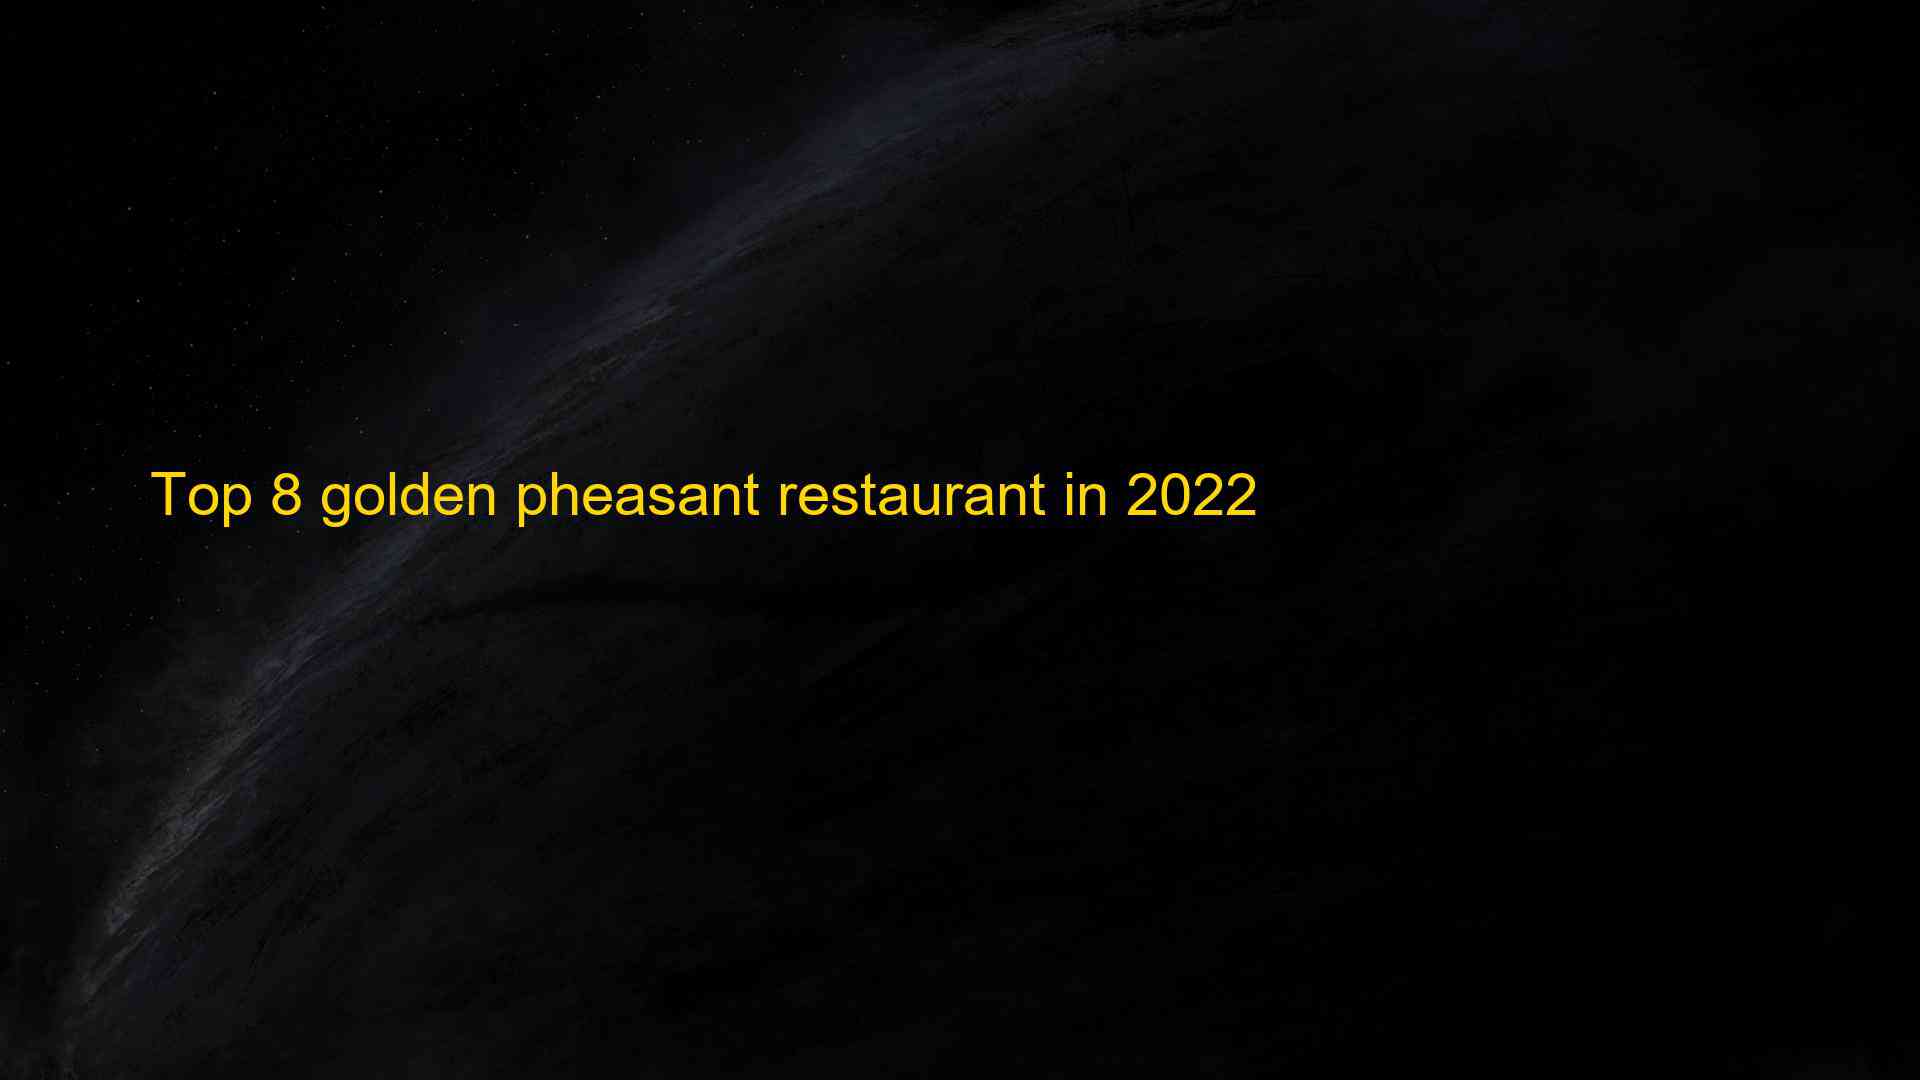 Top 8 golden pheasant restaurant in 2022 1663178035